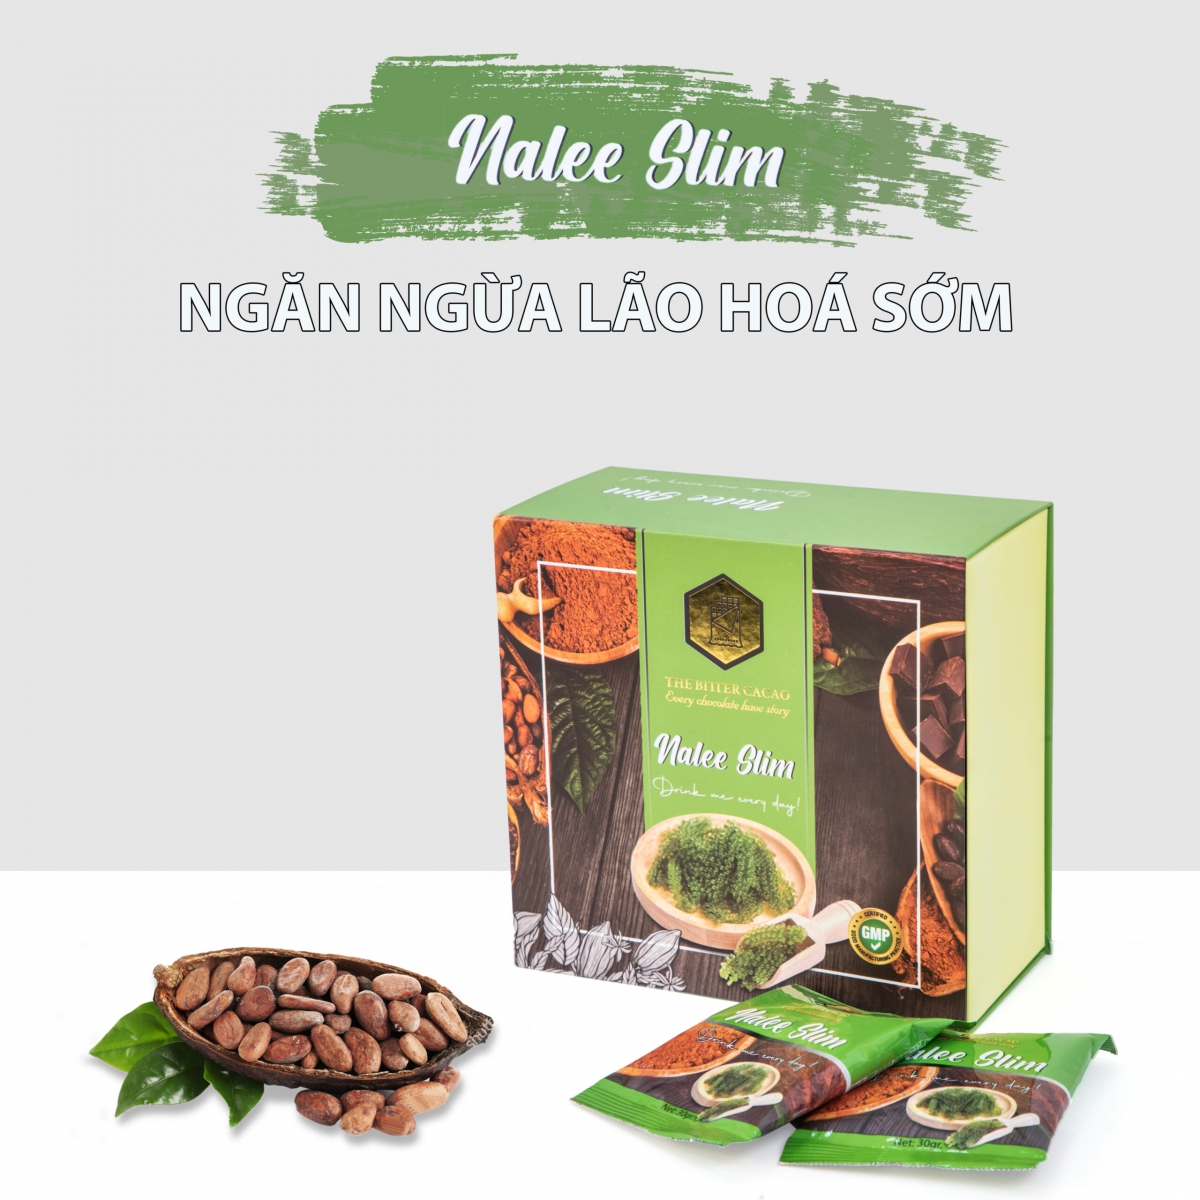 Review tổng hợp đánh giá về cacao giảm cân Nalee Slim từ Webtretho